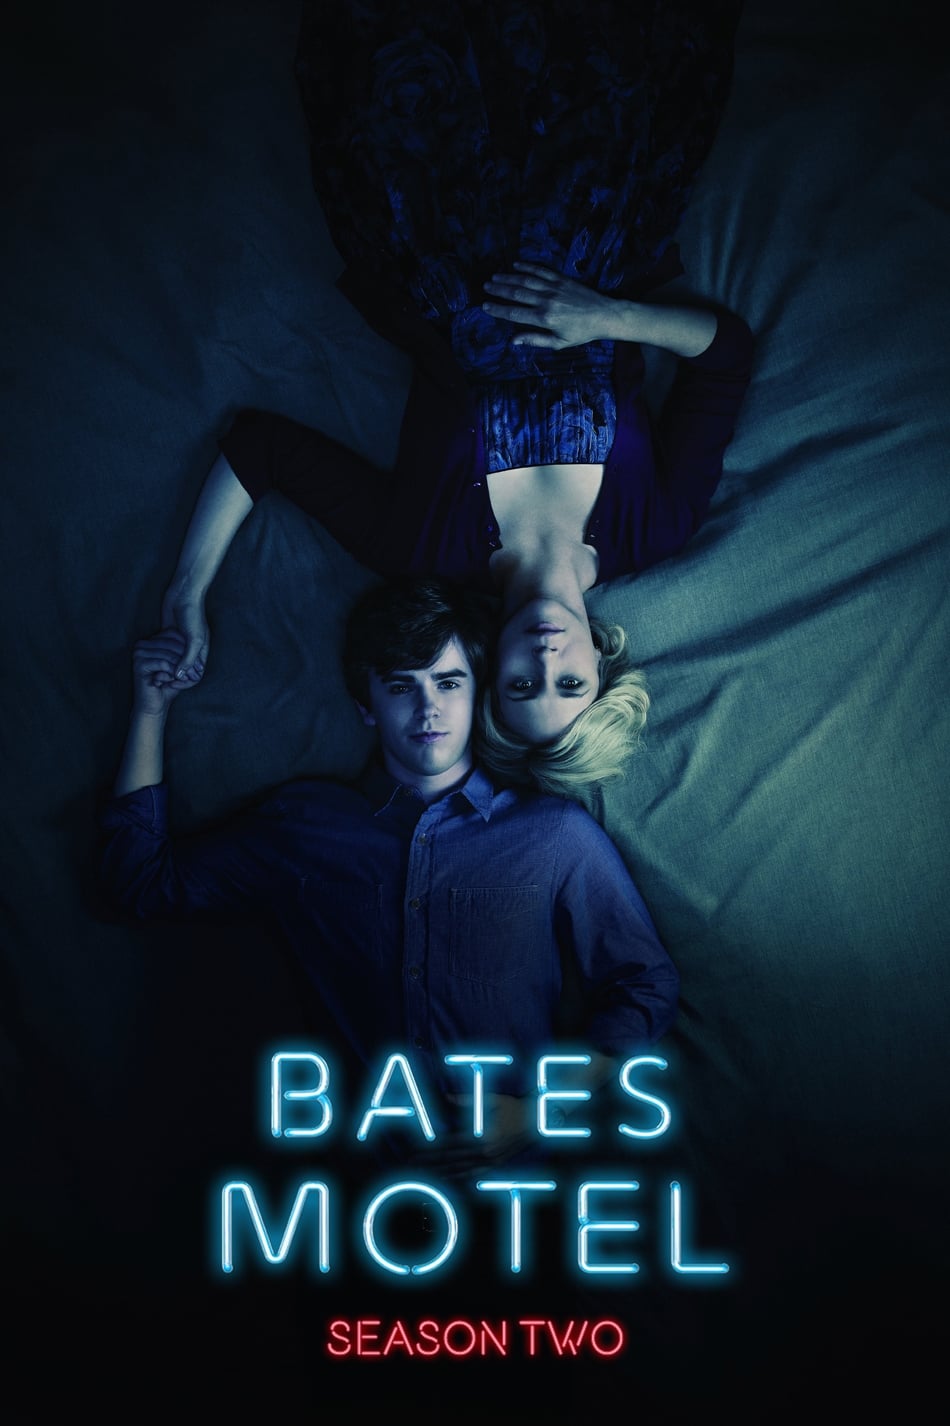 ดูหนังออนไลน์ Bates Motel (2014) Season 2 เบส โมเทล ปี 2 ตอนที่ 1 (ซับไทย)